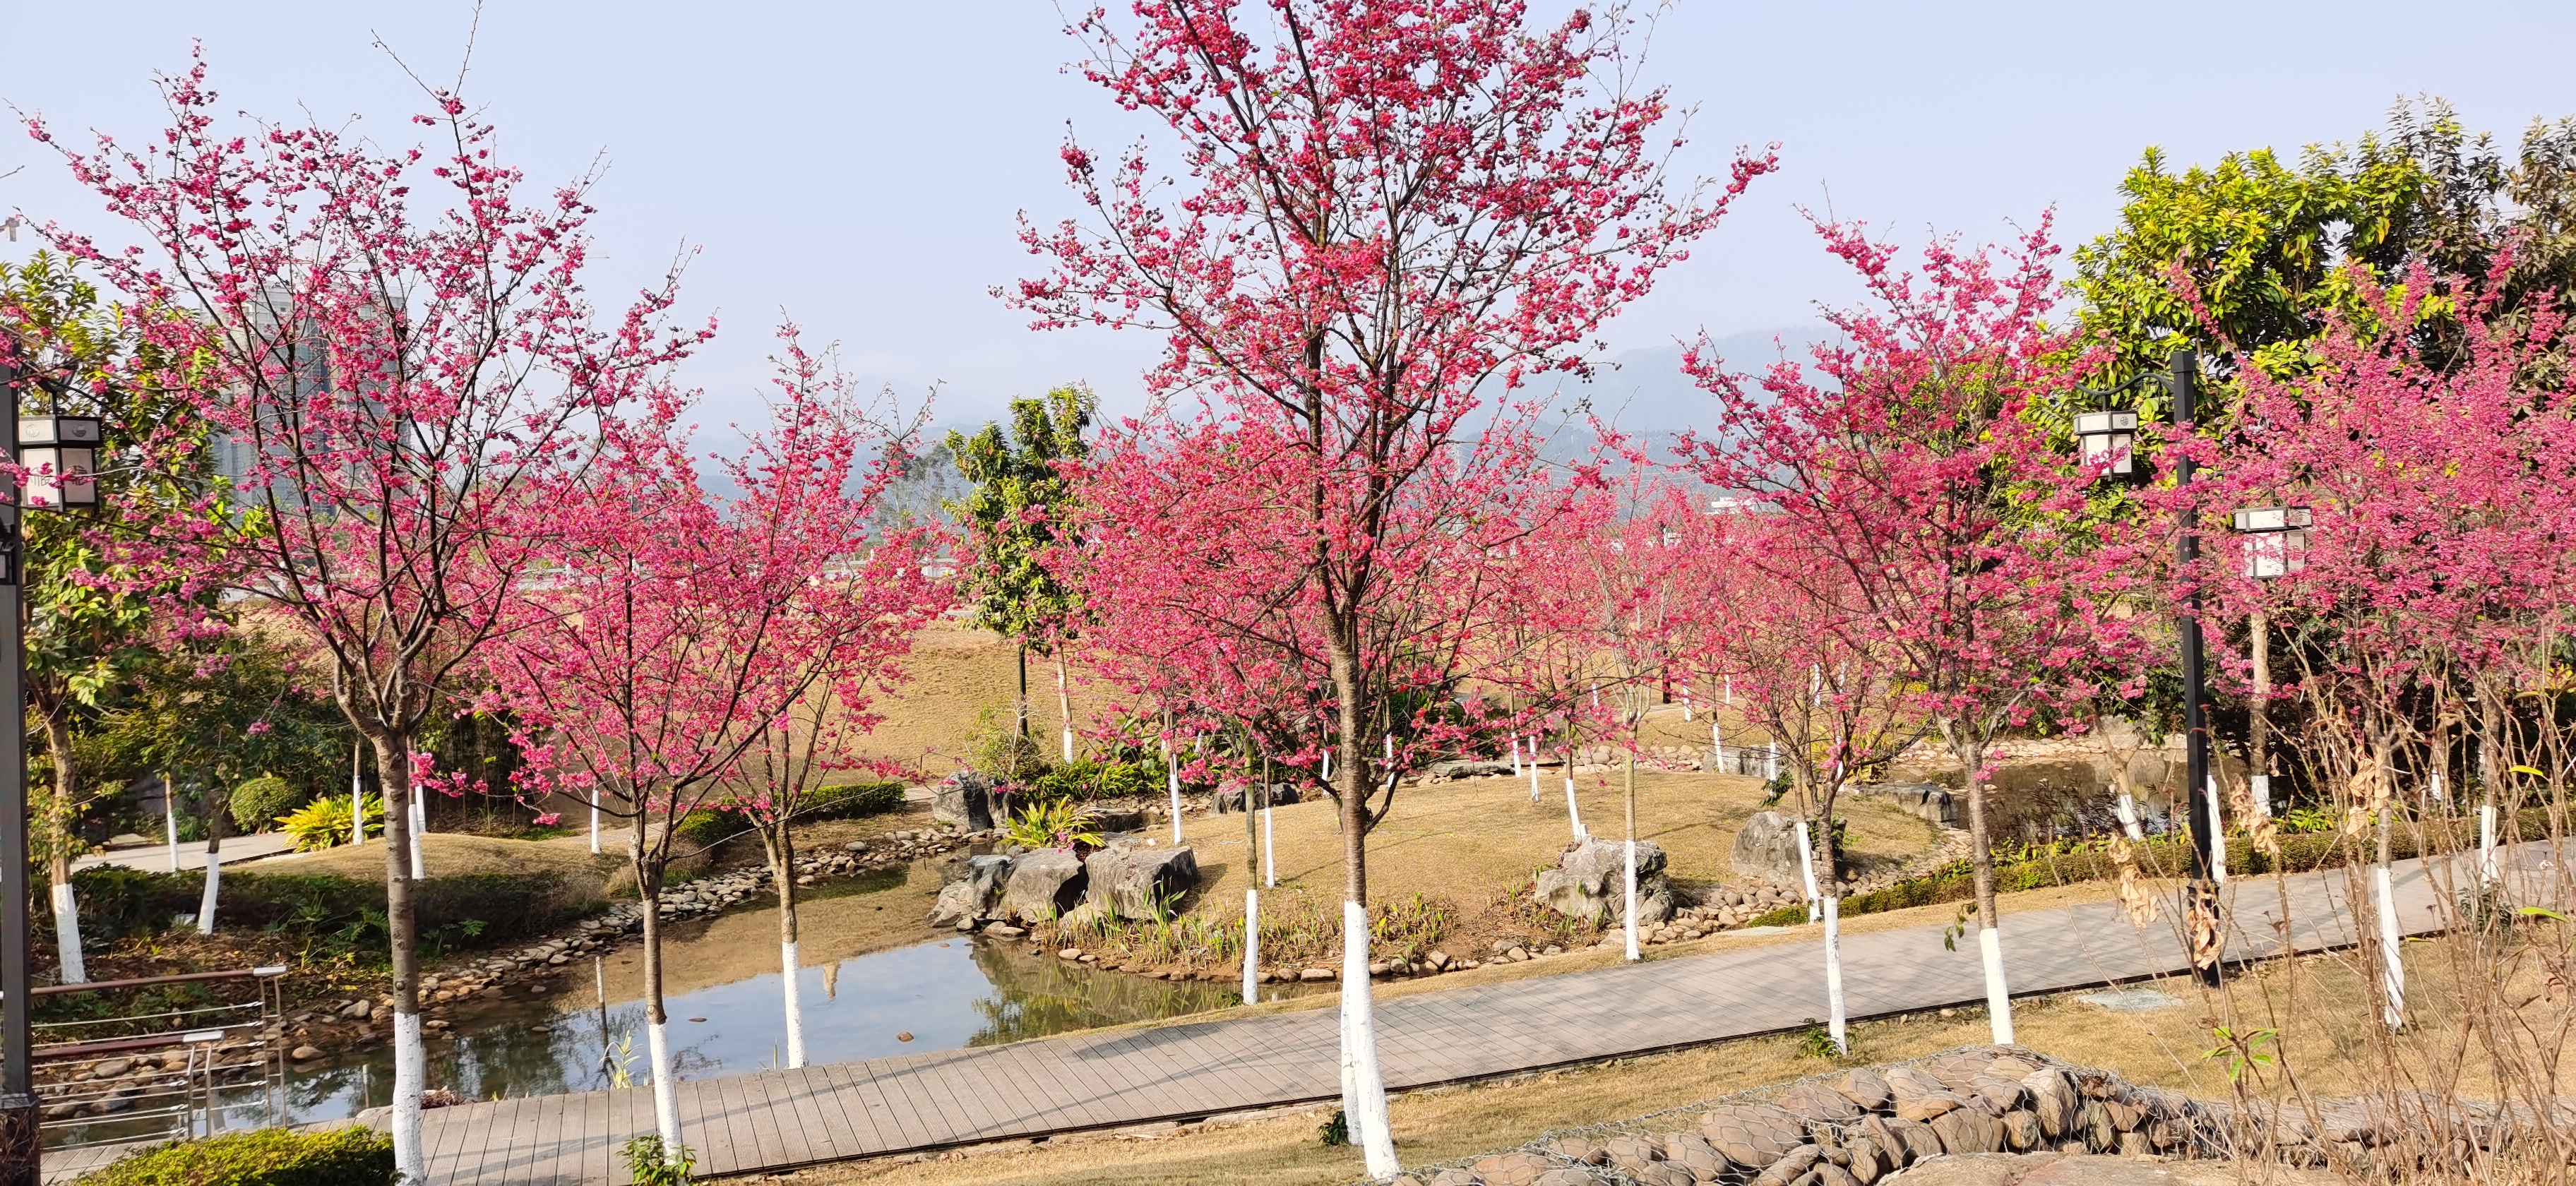 我公司云南红樱在广西蒙山县湿地公园的应用效果.jpg